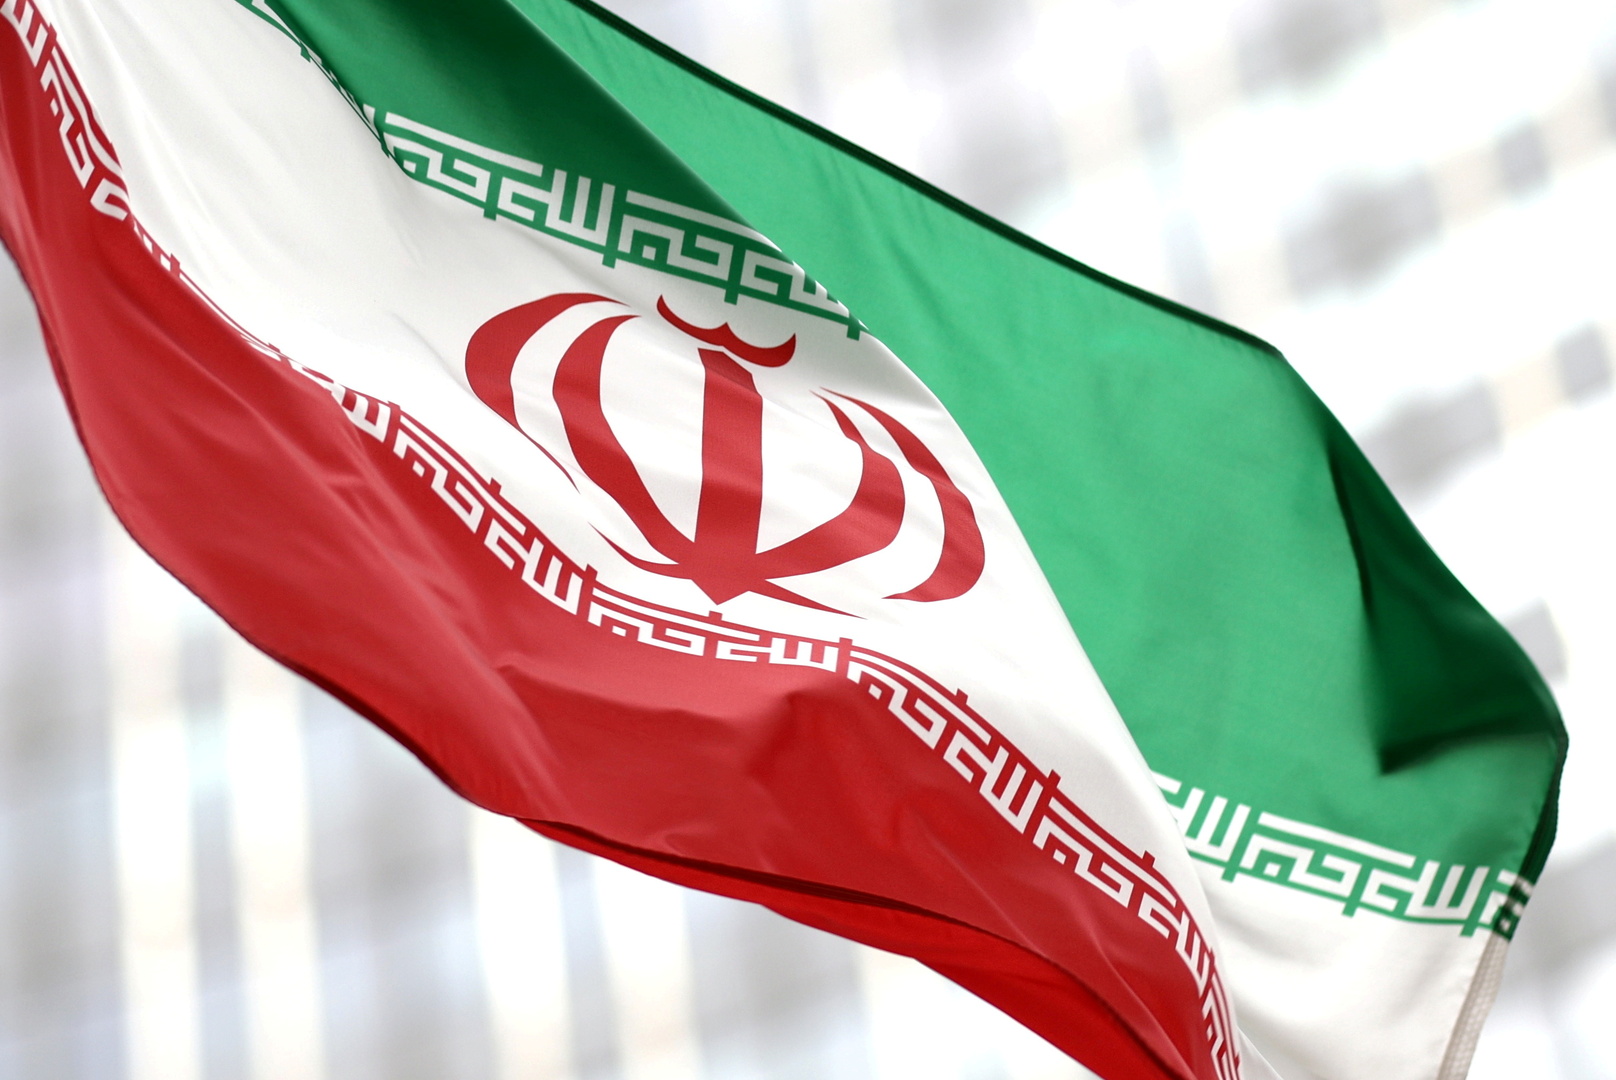 إيران تربح دعوى ضد البحرين وتغرمها بدفع 200 مليون يورو